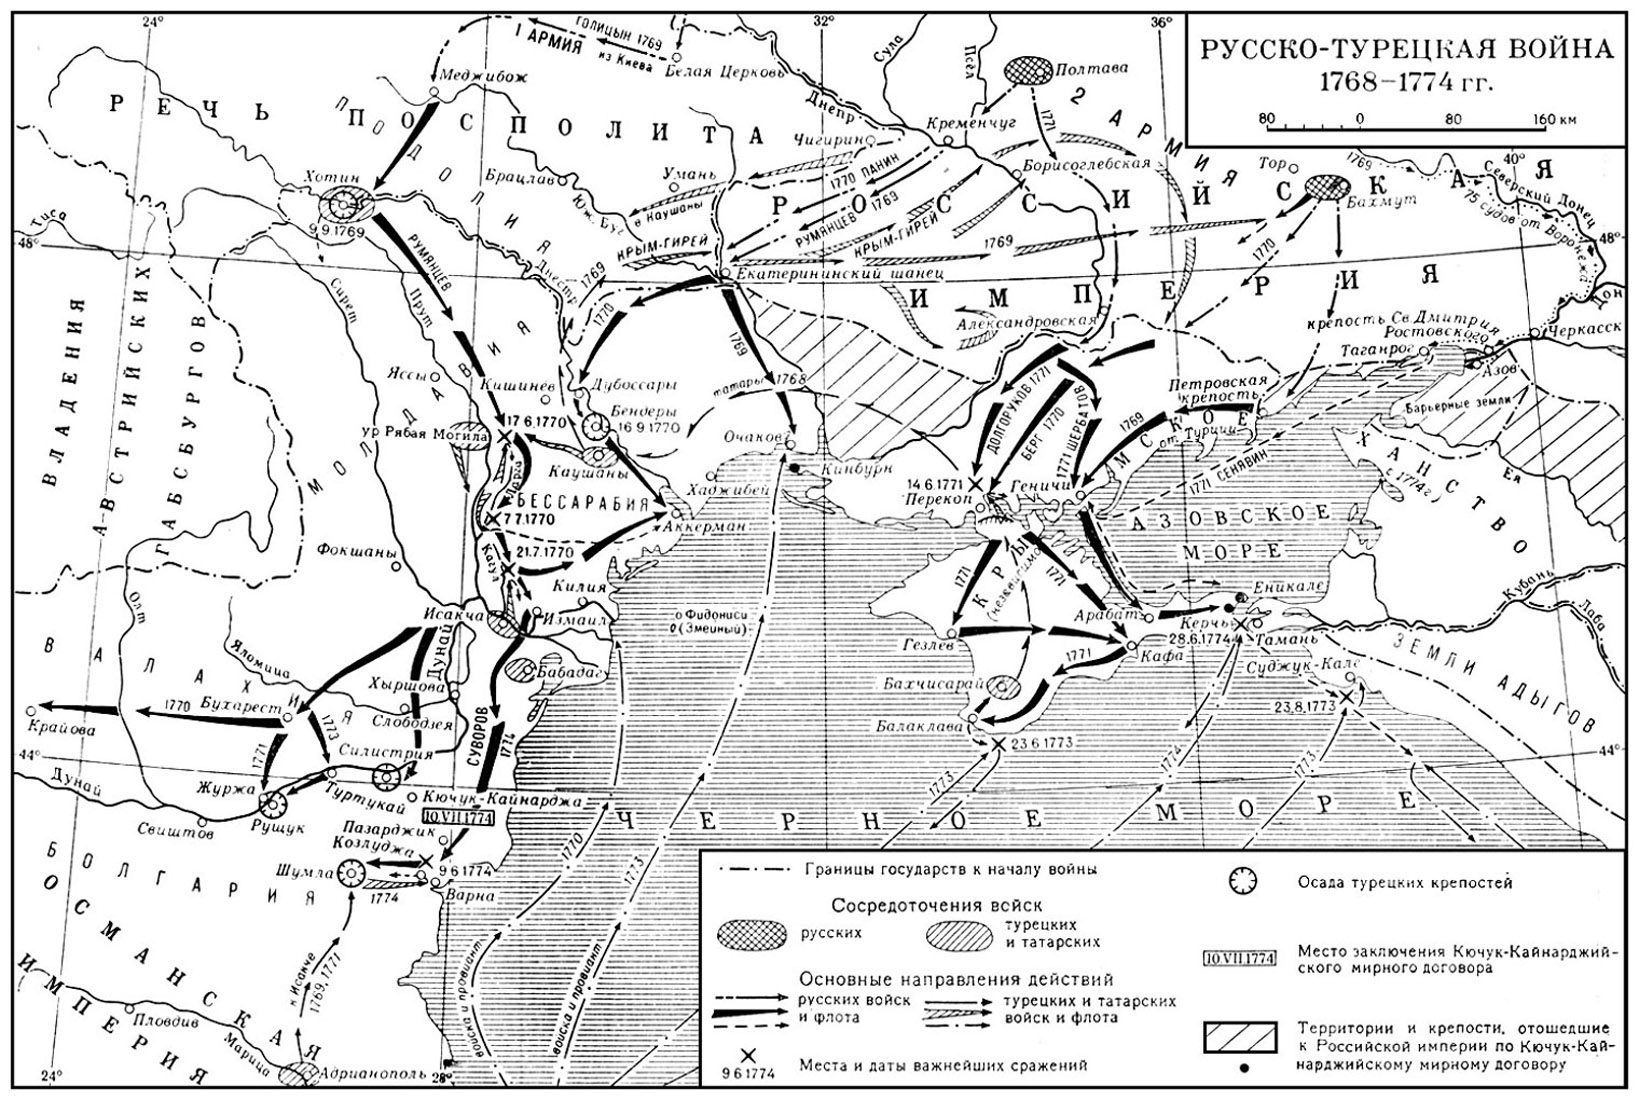 Карта русско-турецкой войны 1768-74 гг. с указанием направлений действий русских и турецких войск